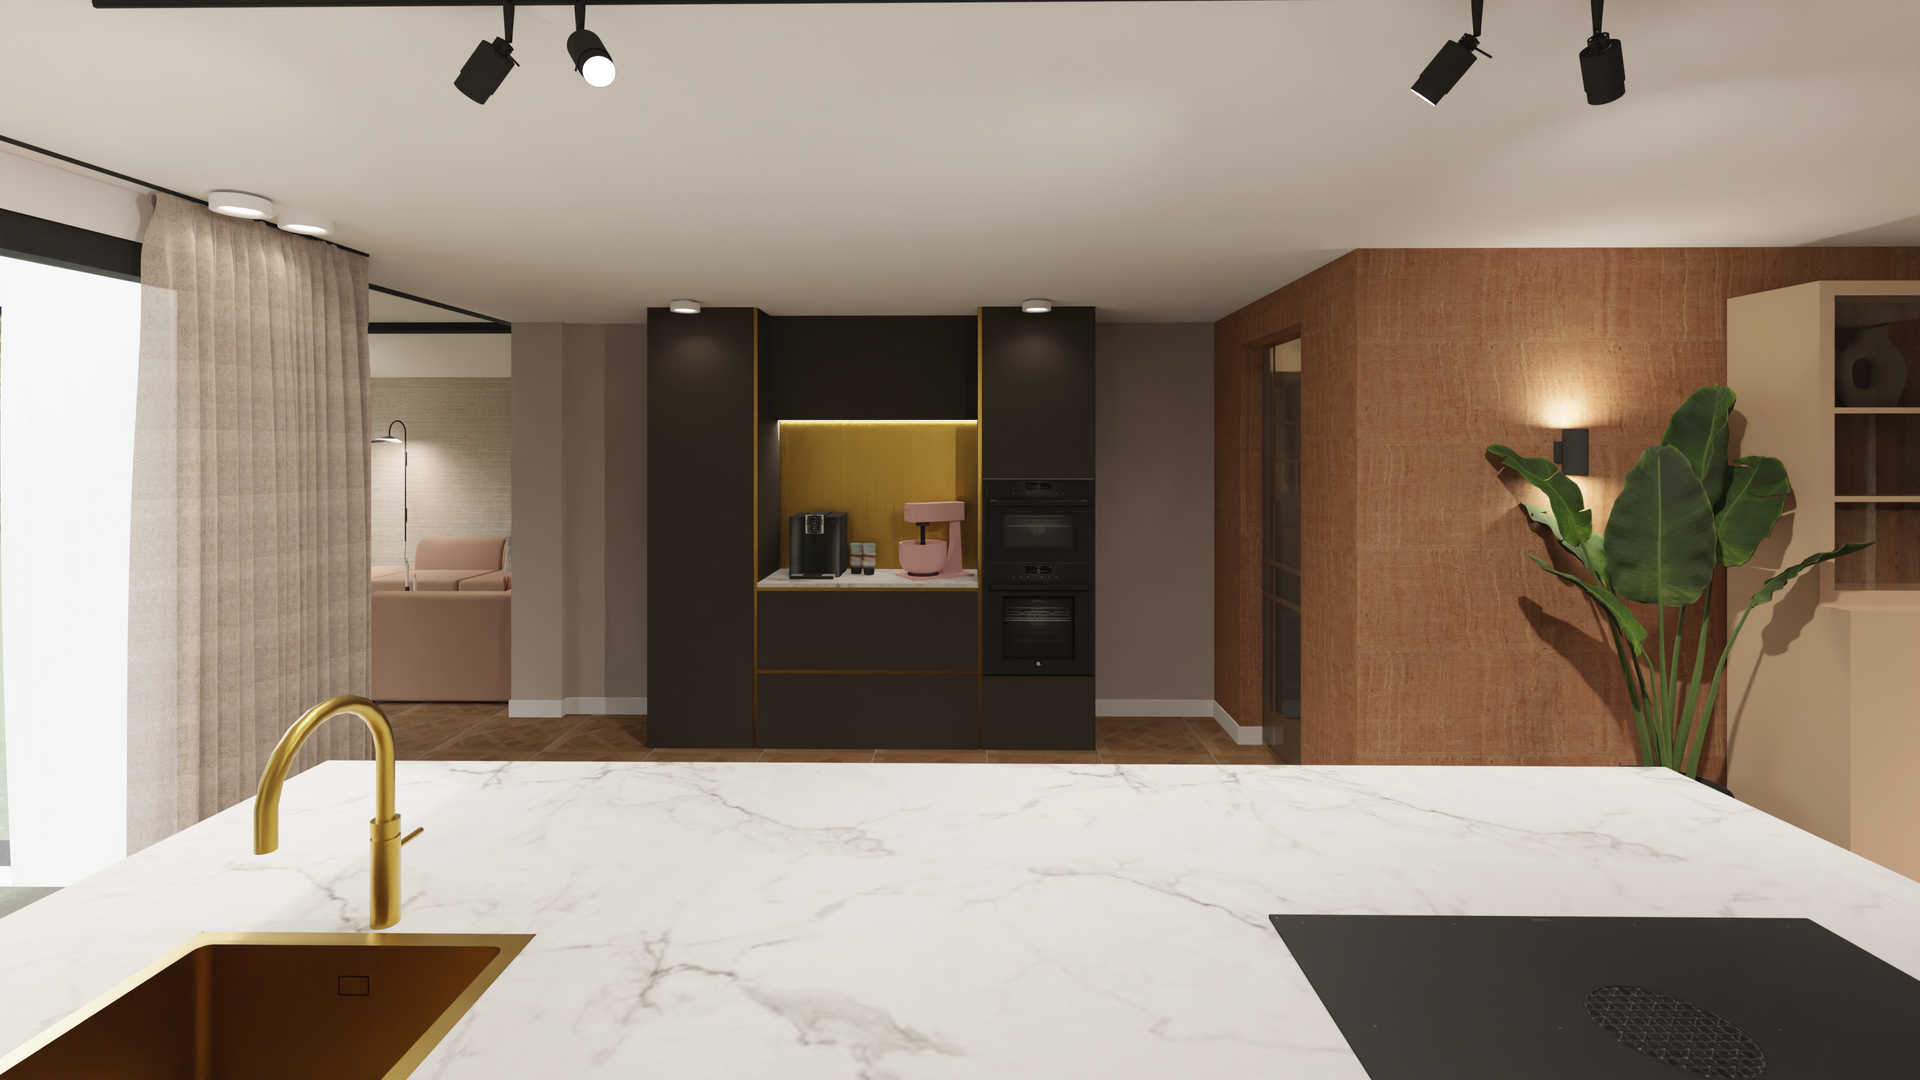 Keukenontwerp met luxe materialen wordt midden in de woning geplaatst.